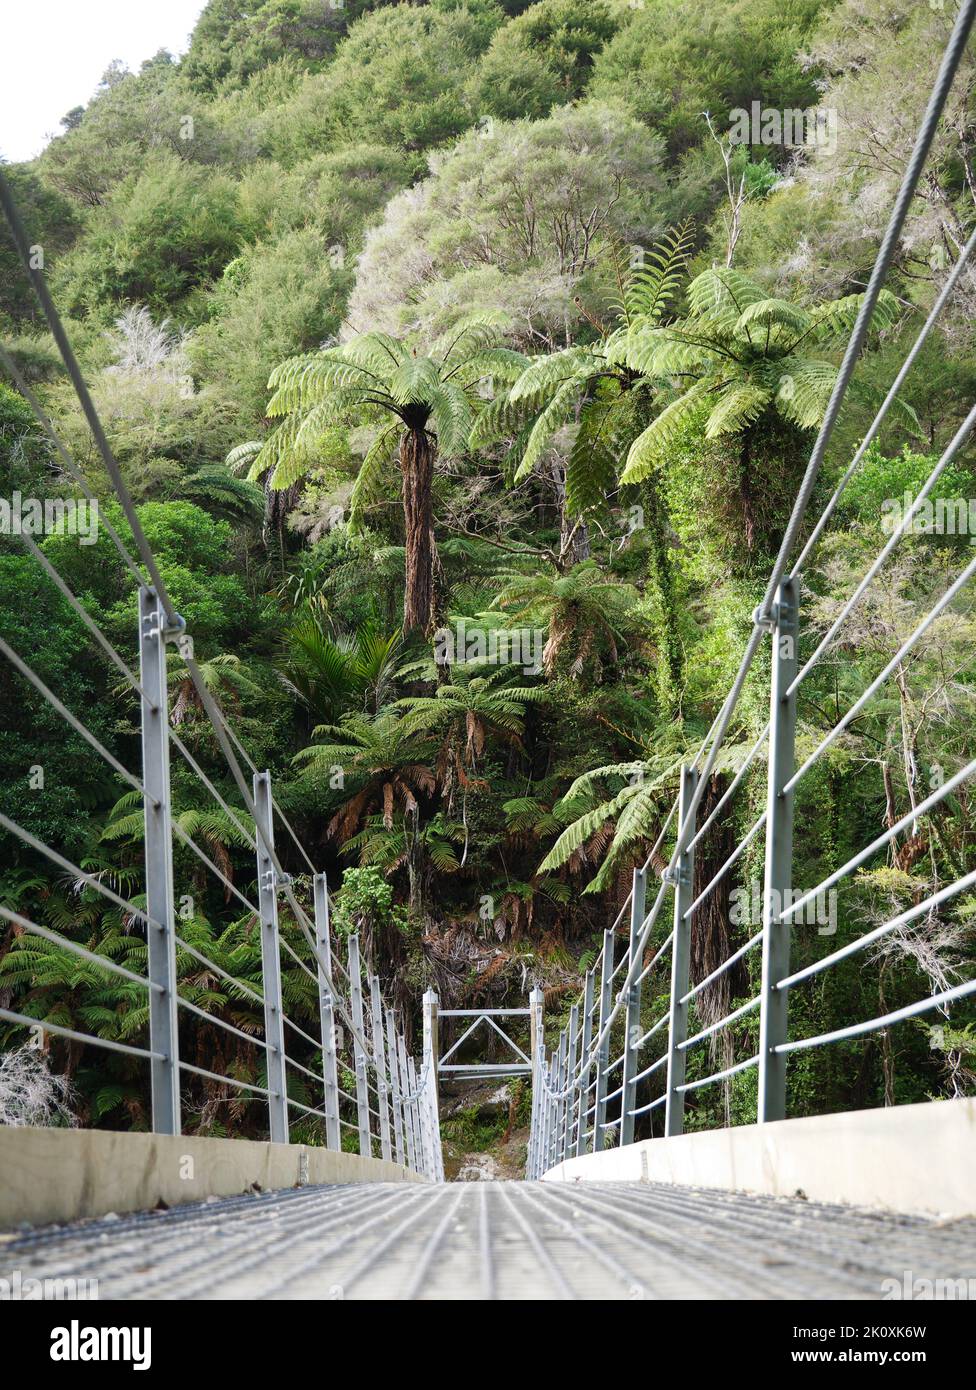 Hängebrücke im Regenwald von Neuseeland - Hängebrücke im Regenwald Neuseelands - Abel Tasman Nationalpark Stockfoto